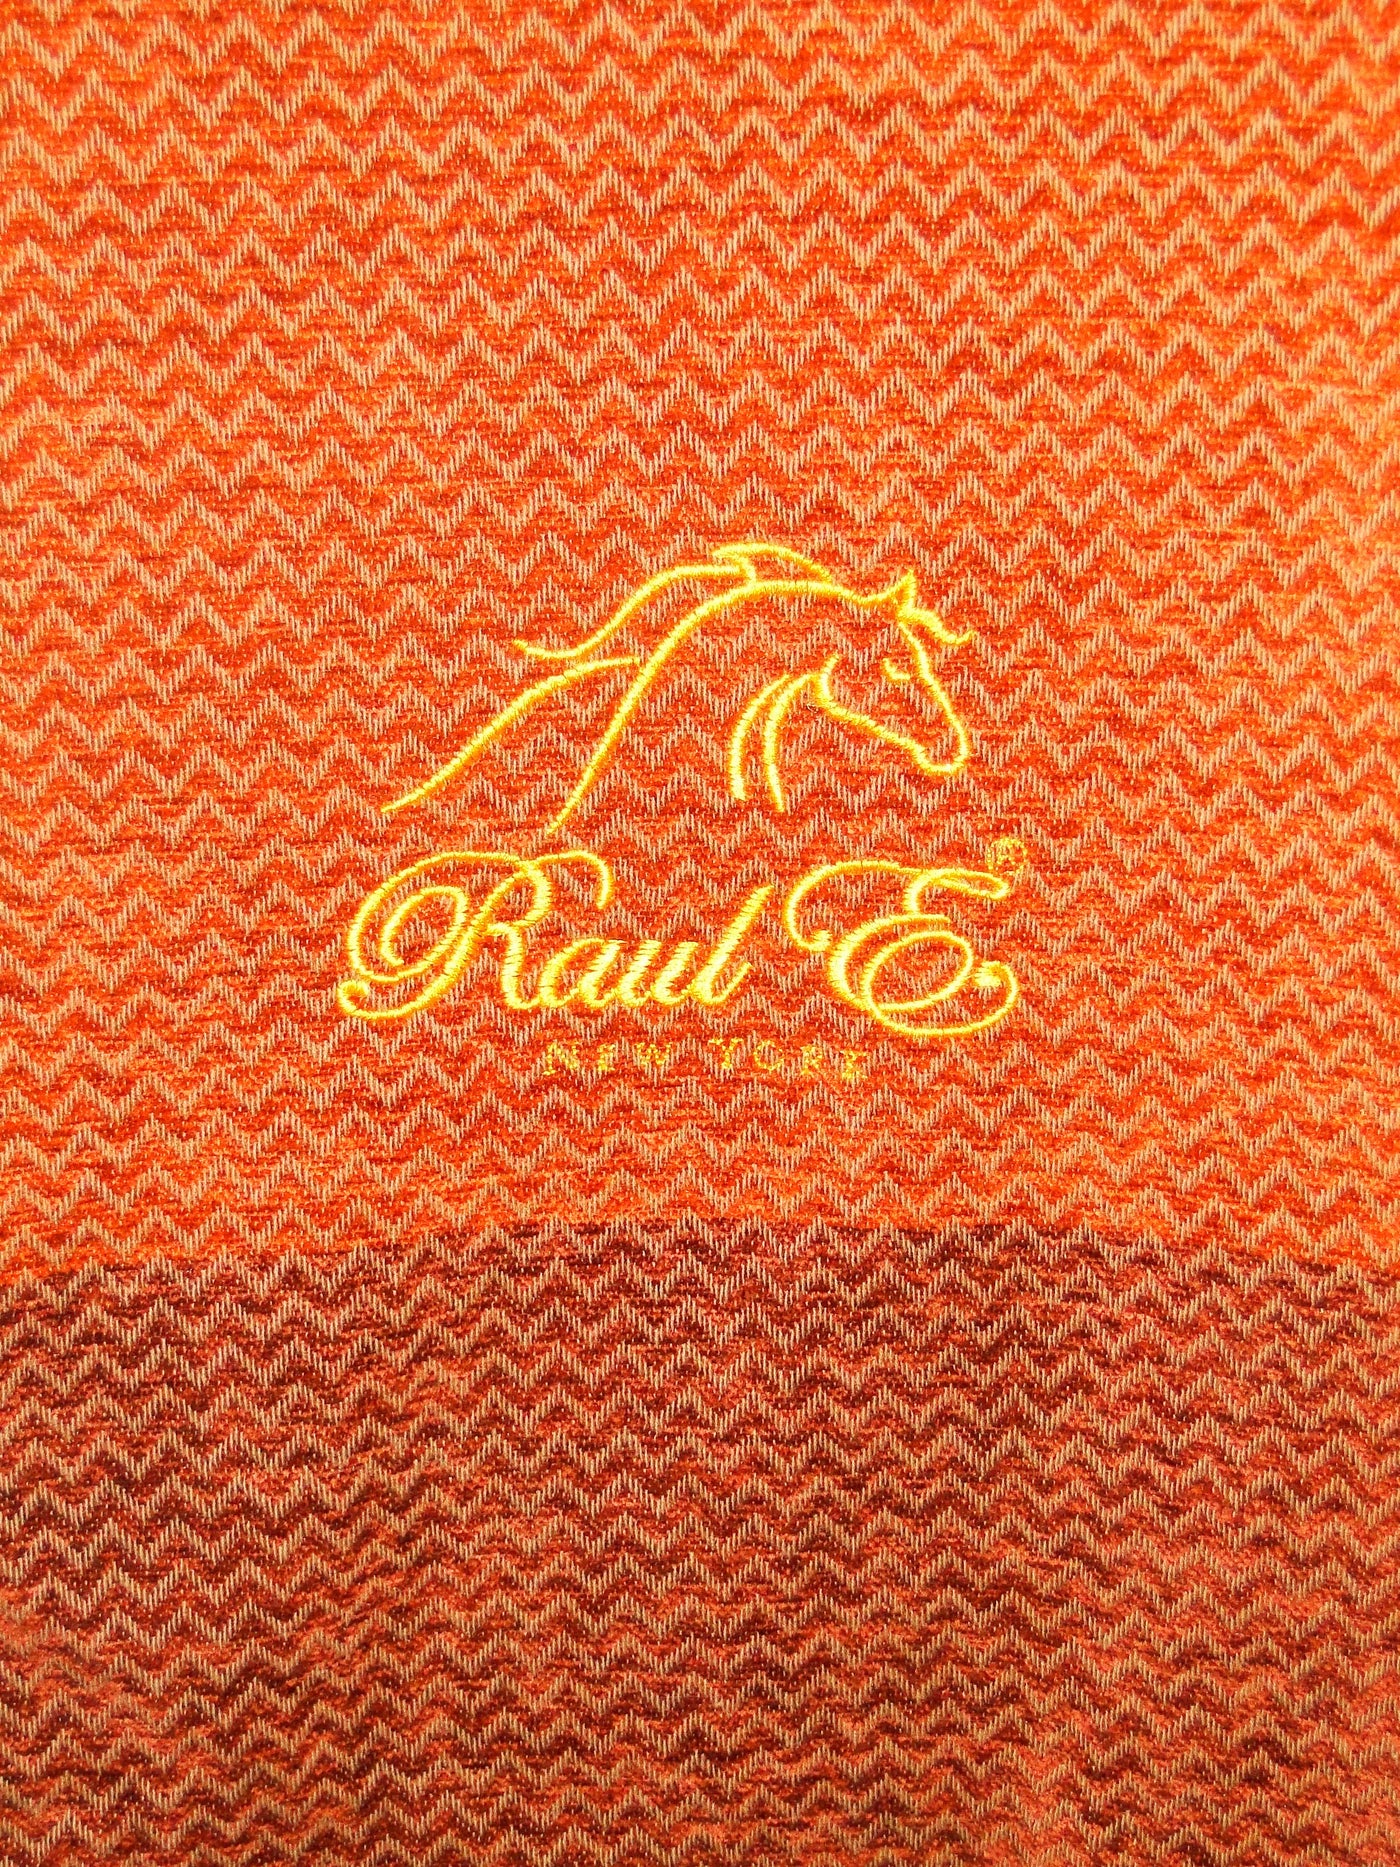 Raul E New York luxury blanket